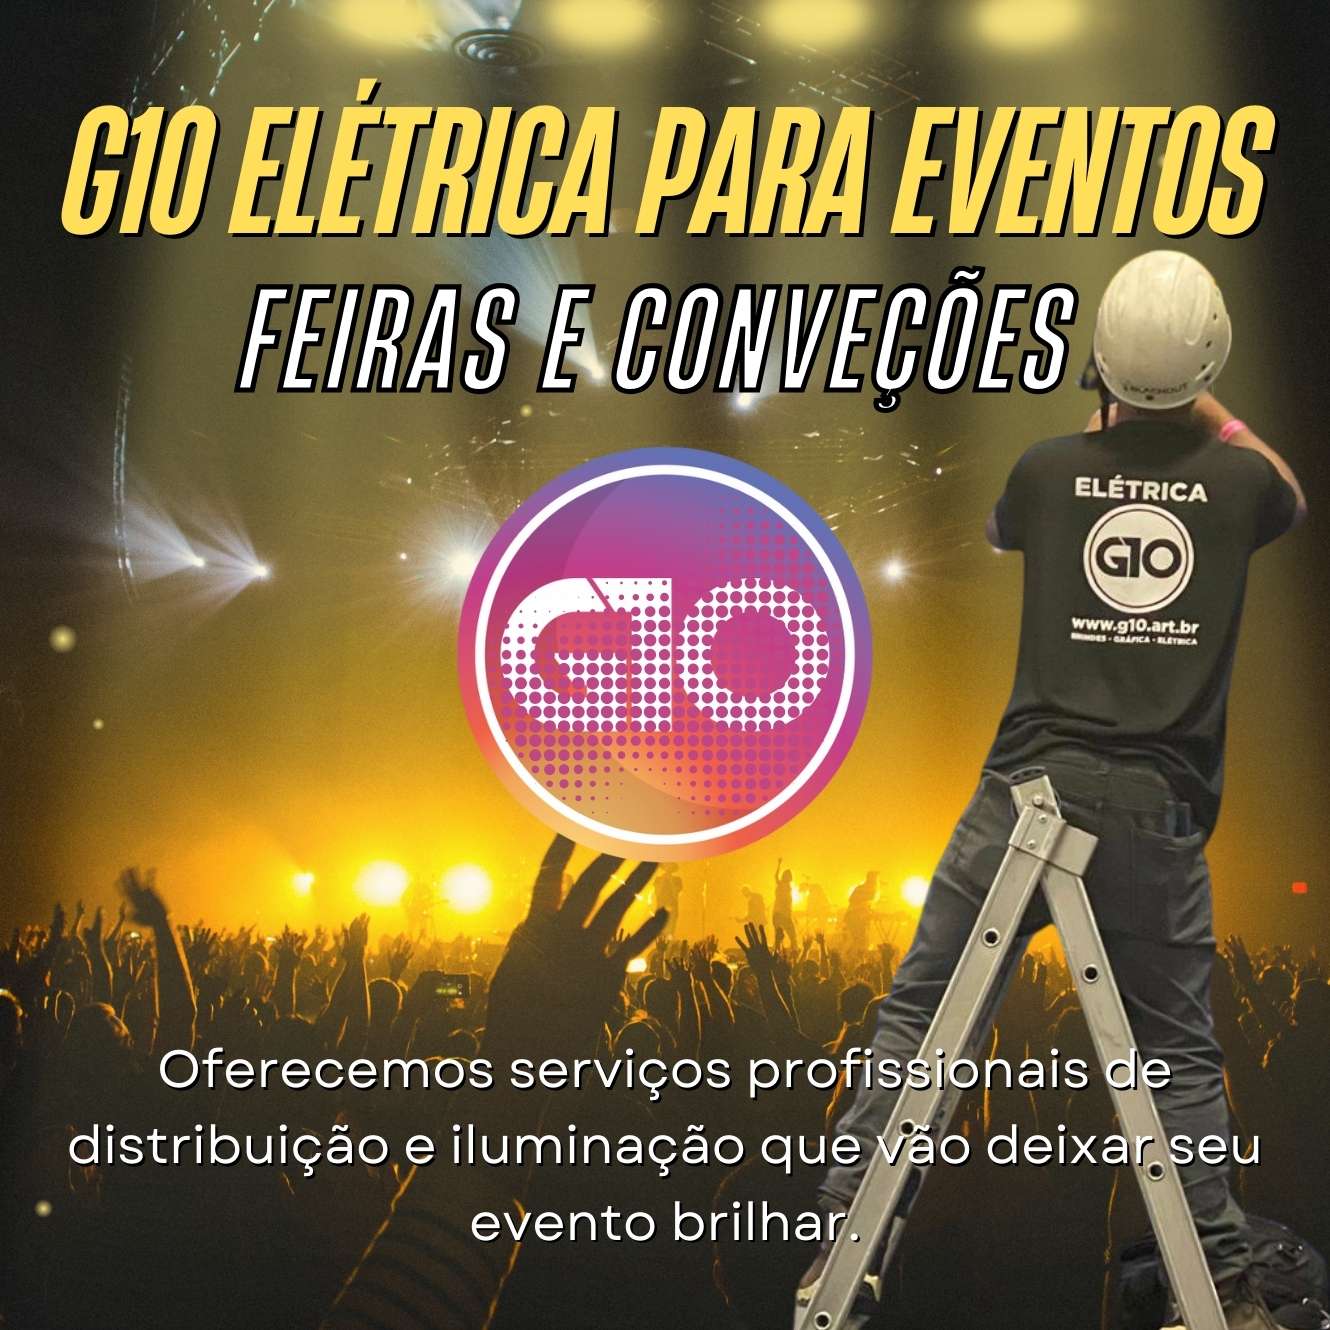 G10 Elétrica Para Eventos, Feiras e Convenções